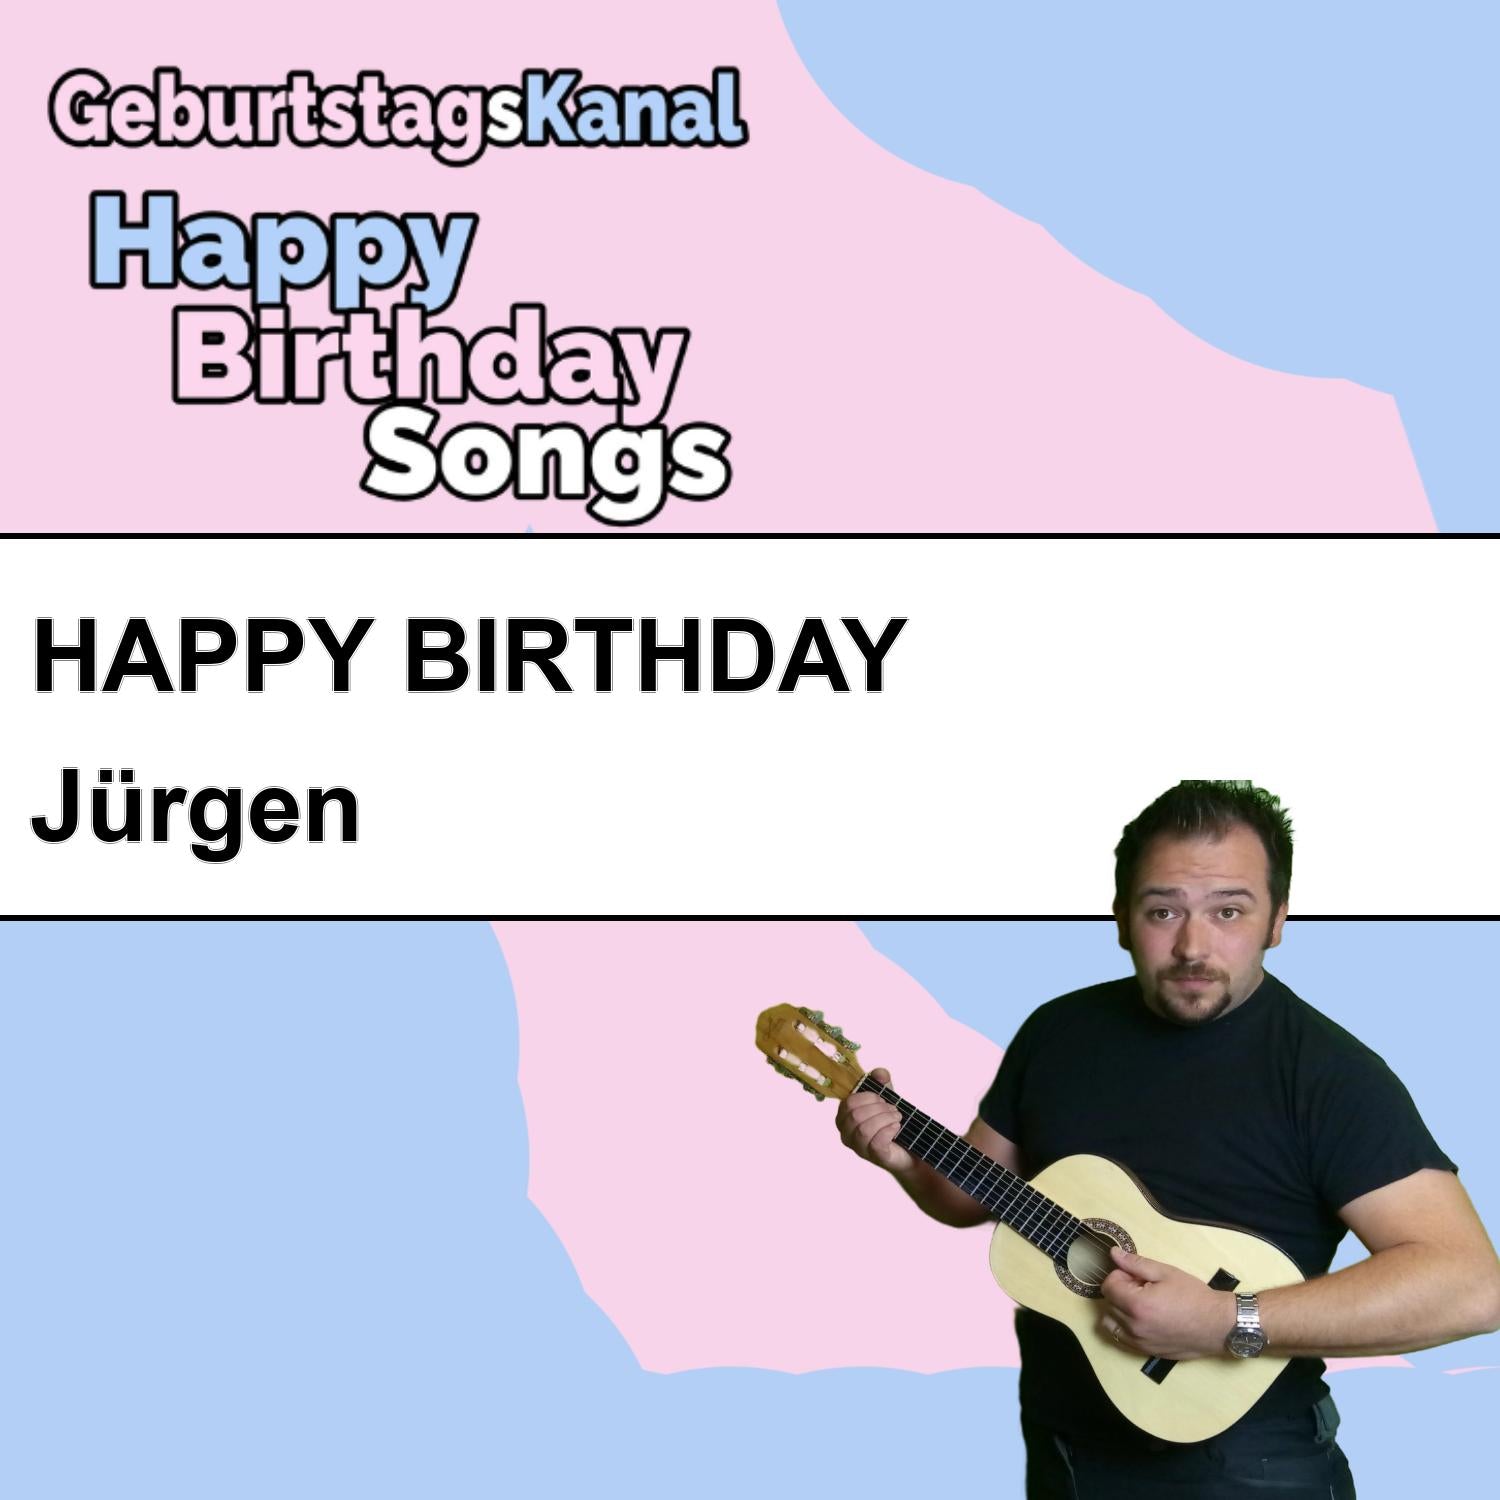 Produktbild Happy Birthday to you Jürgen mit Wunschgrußbotschaft